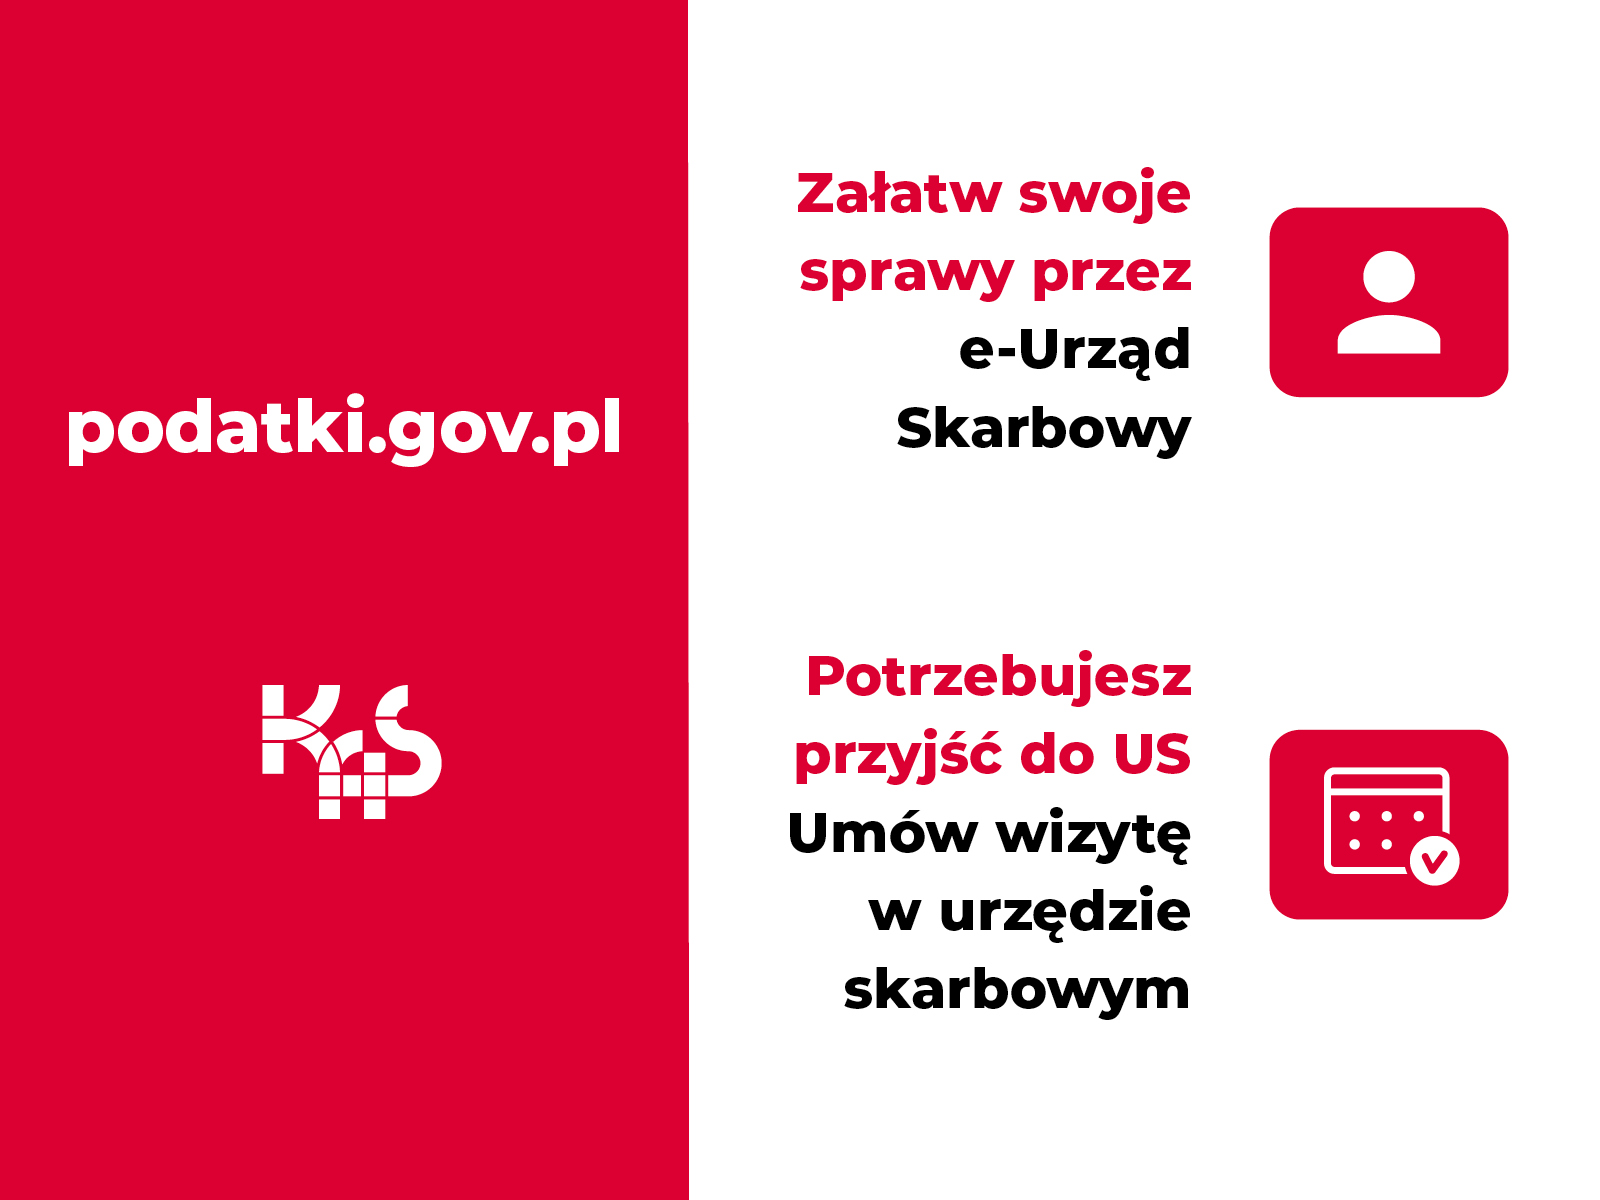 biało-czerwone tło, adres: podatki,gov.pl; logo Krajowej Administracji Skarbowej, załatw swoje sprawy przez e-urząd skarbowy, potrzebujesz przyjść do US umów wizytę